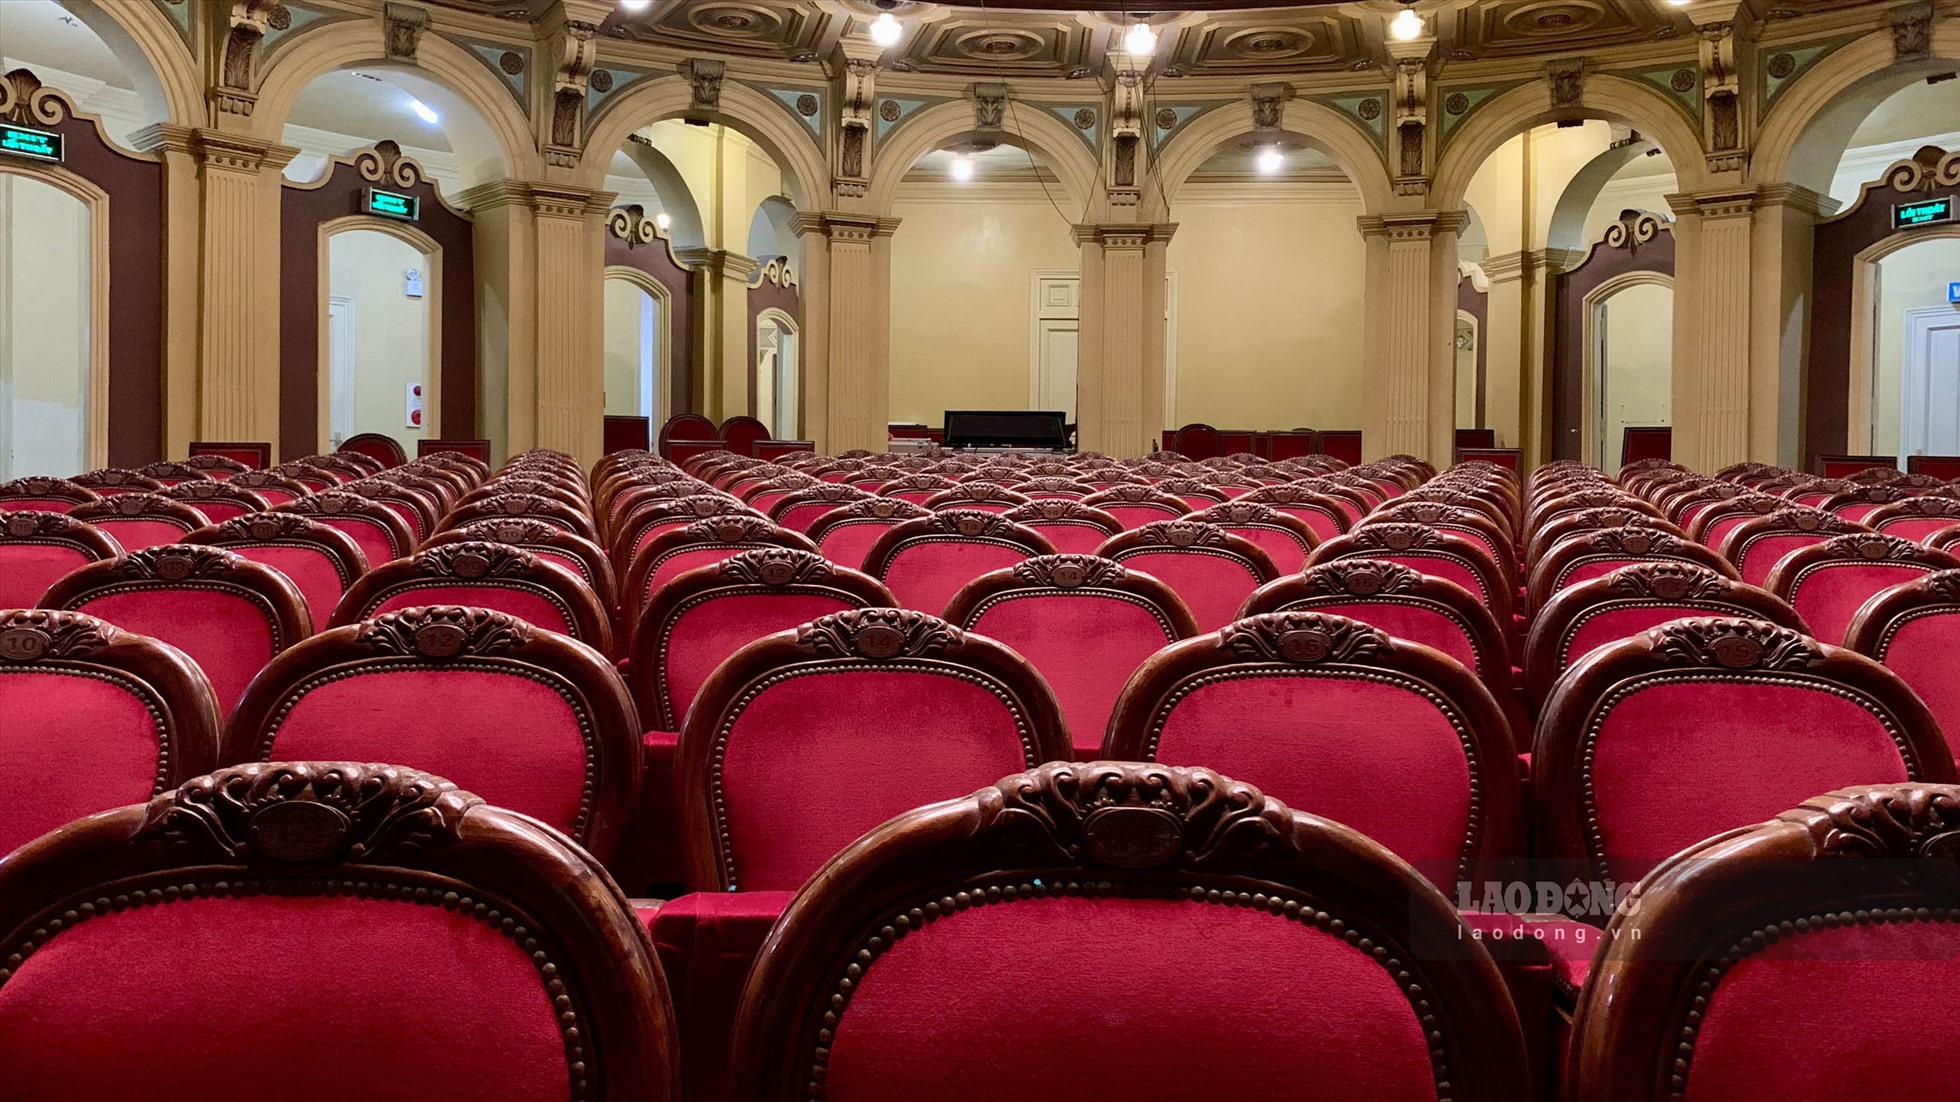 Khu vực lòng khán đài là hệ thống ghế gỗ bọc len đỏ, có khoảng 350 ghế.